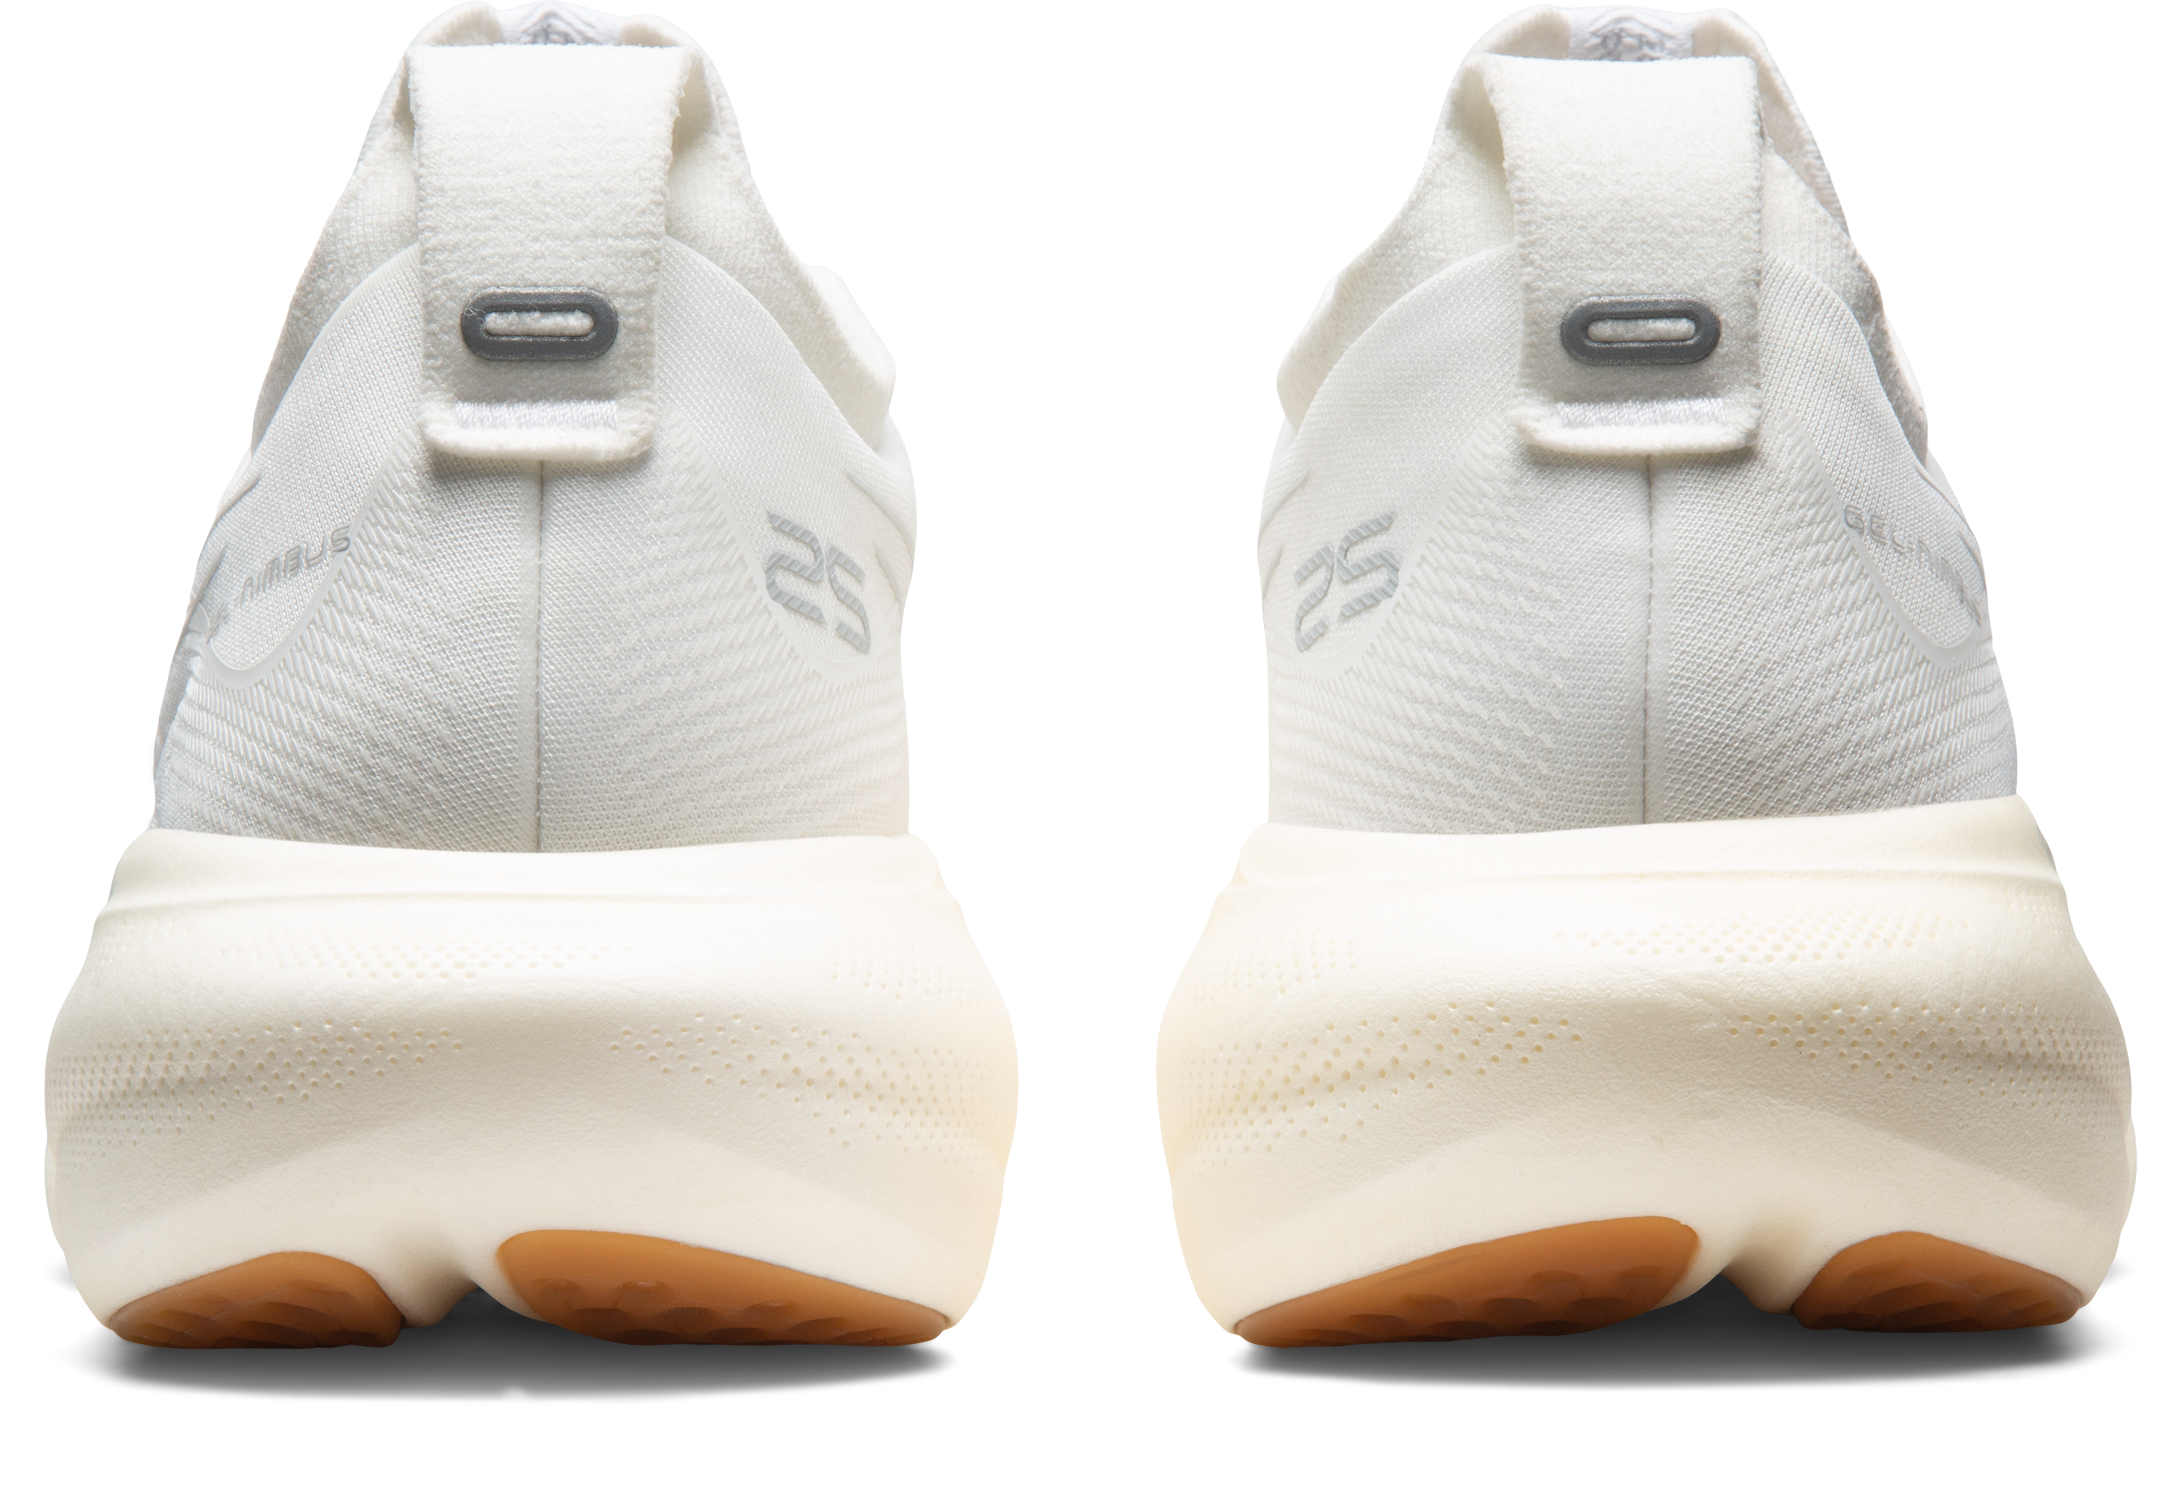 Asics Men's Gel-Nimbus 25 Running Shoes in White/White